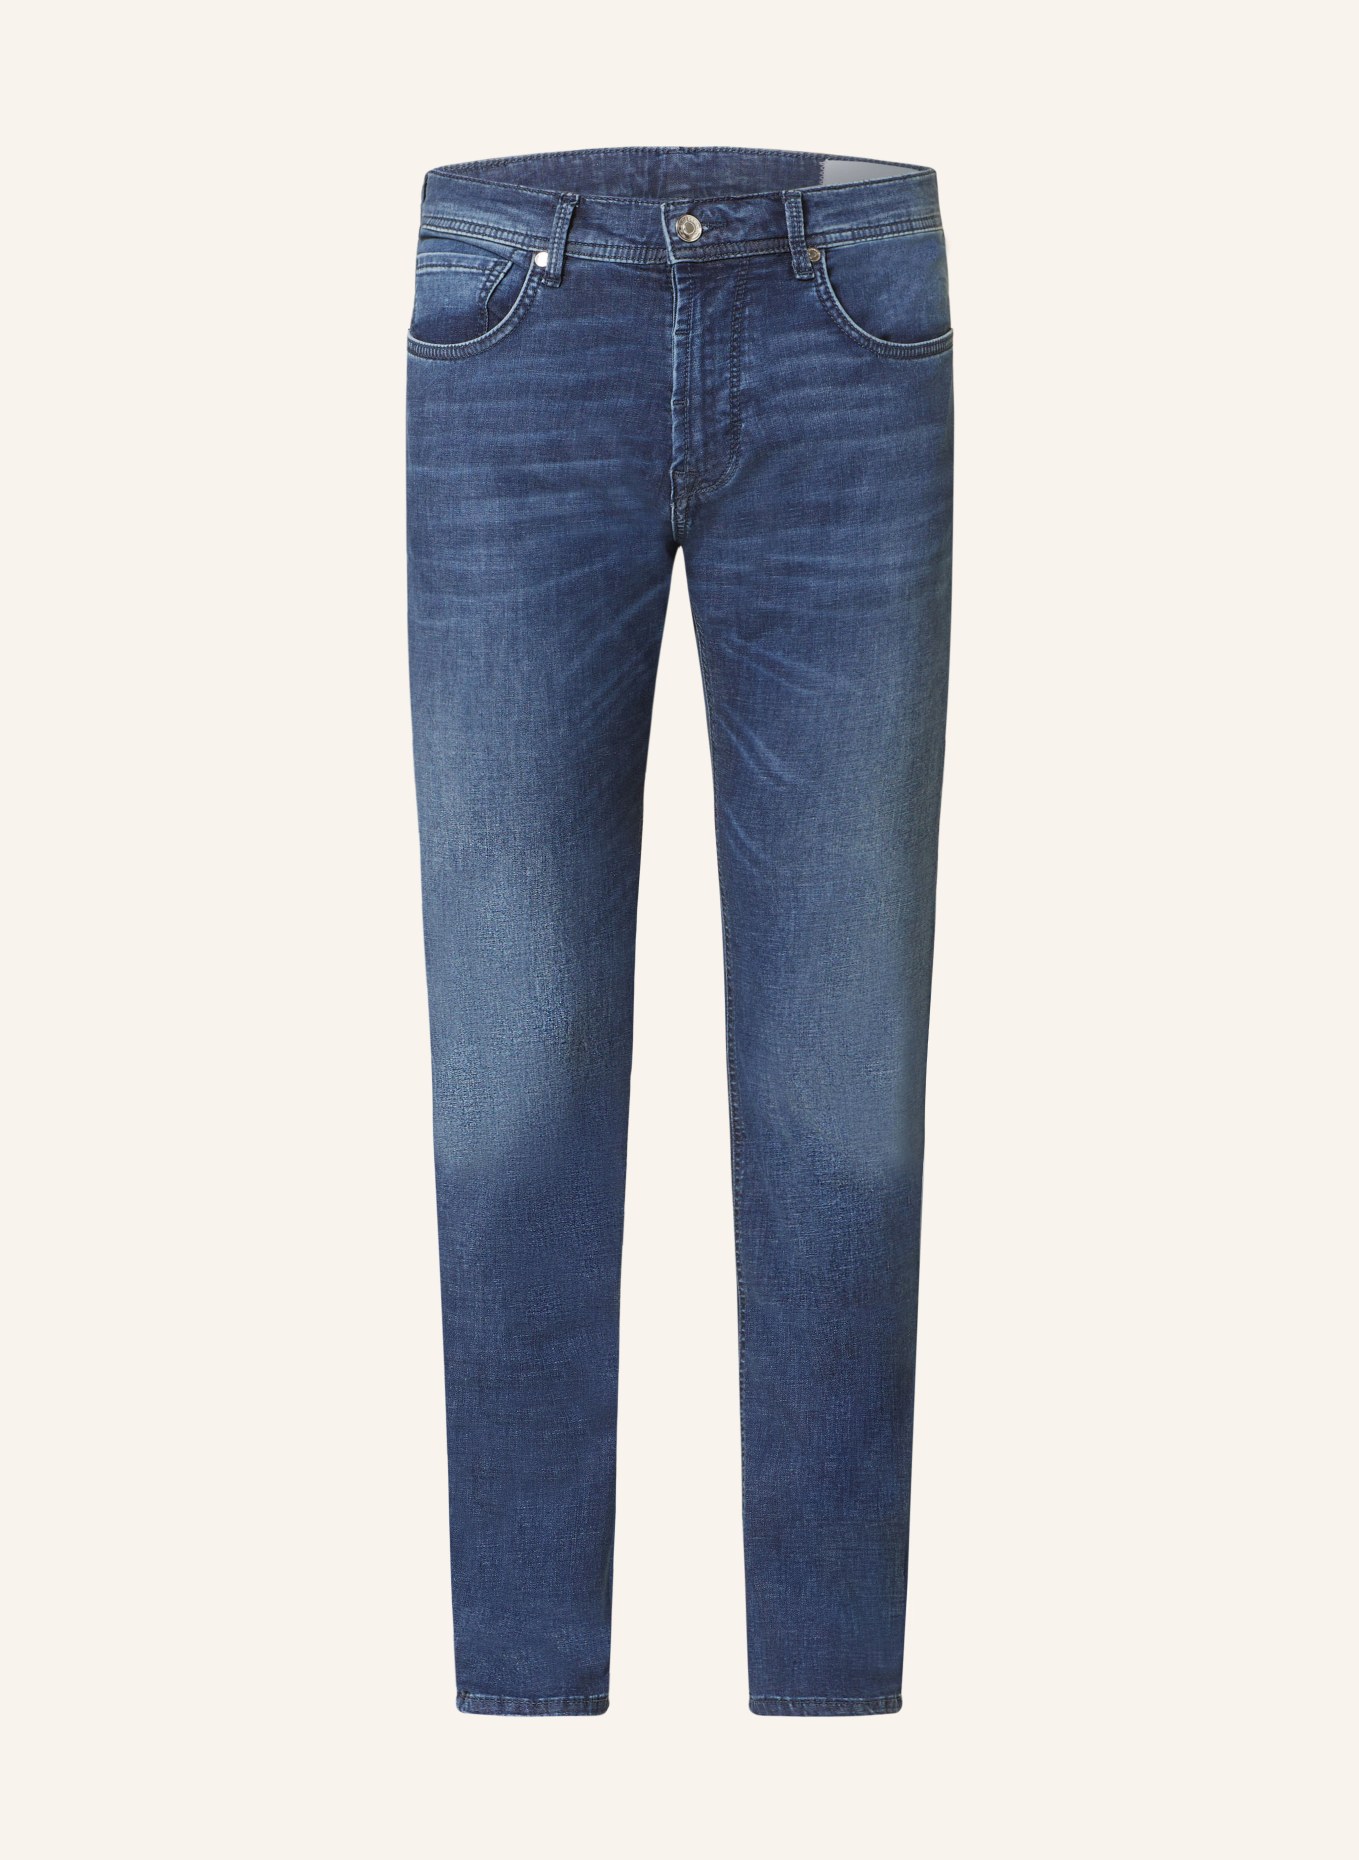 BALDESSARINI Jeans regular fit, Color: 6815 dark blue used whisker (Image 1)